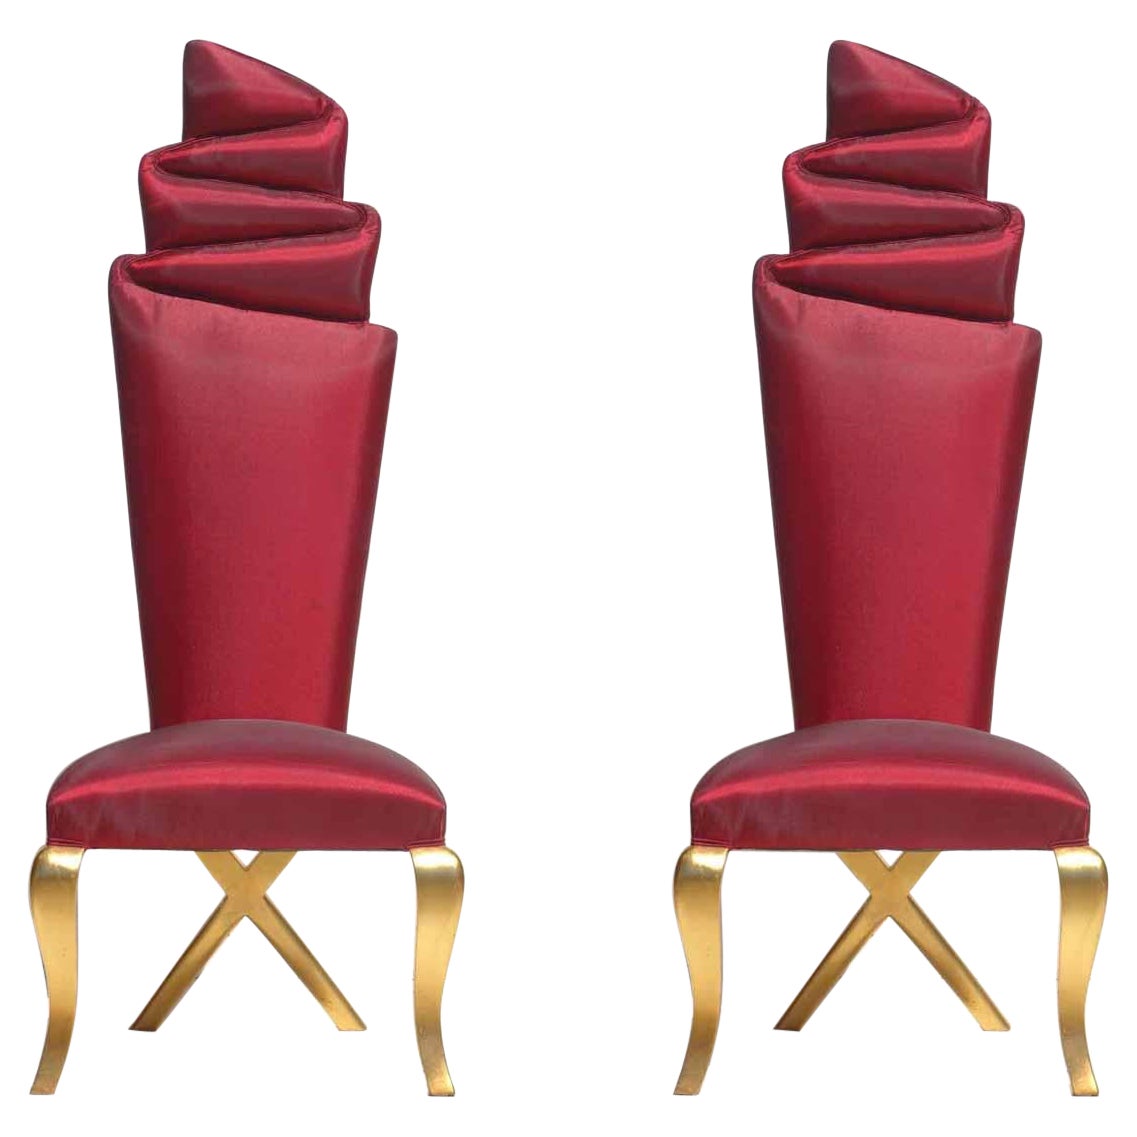 Paire de chaises modernes surréalistes dorées et rouges